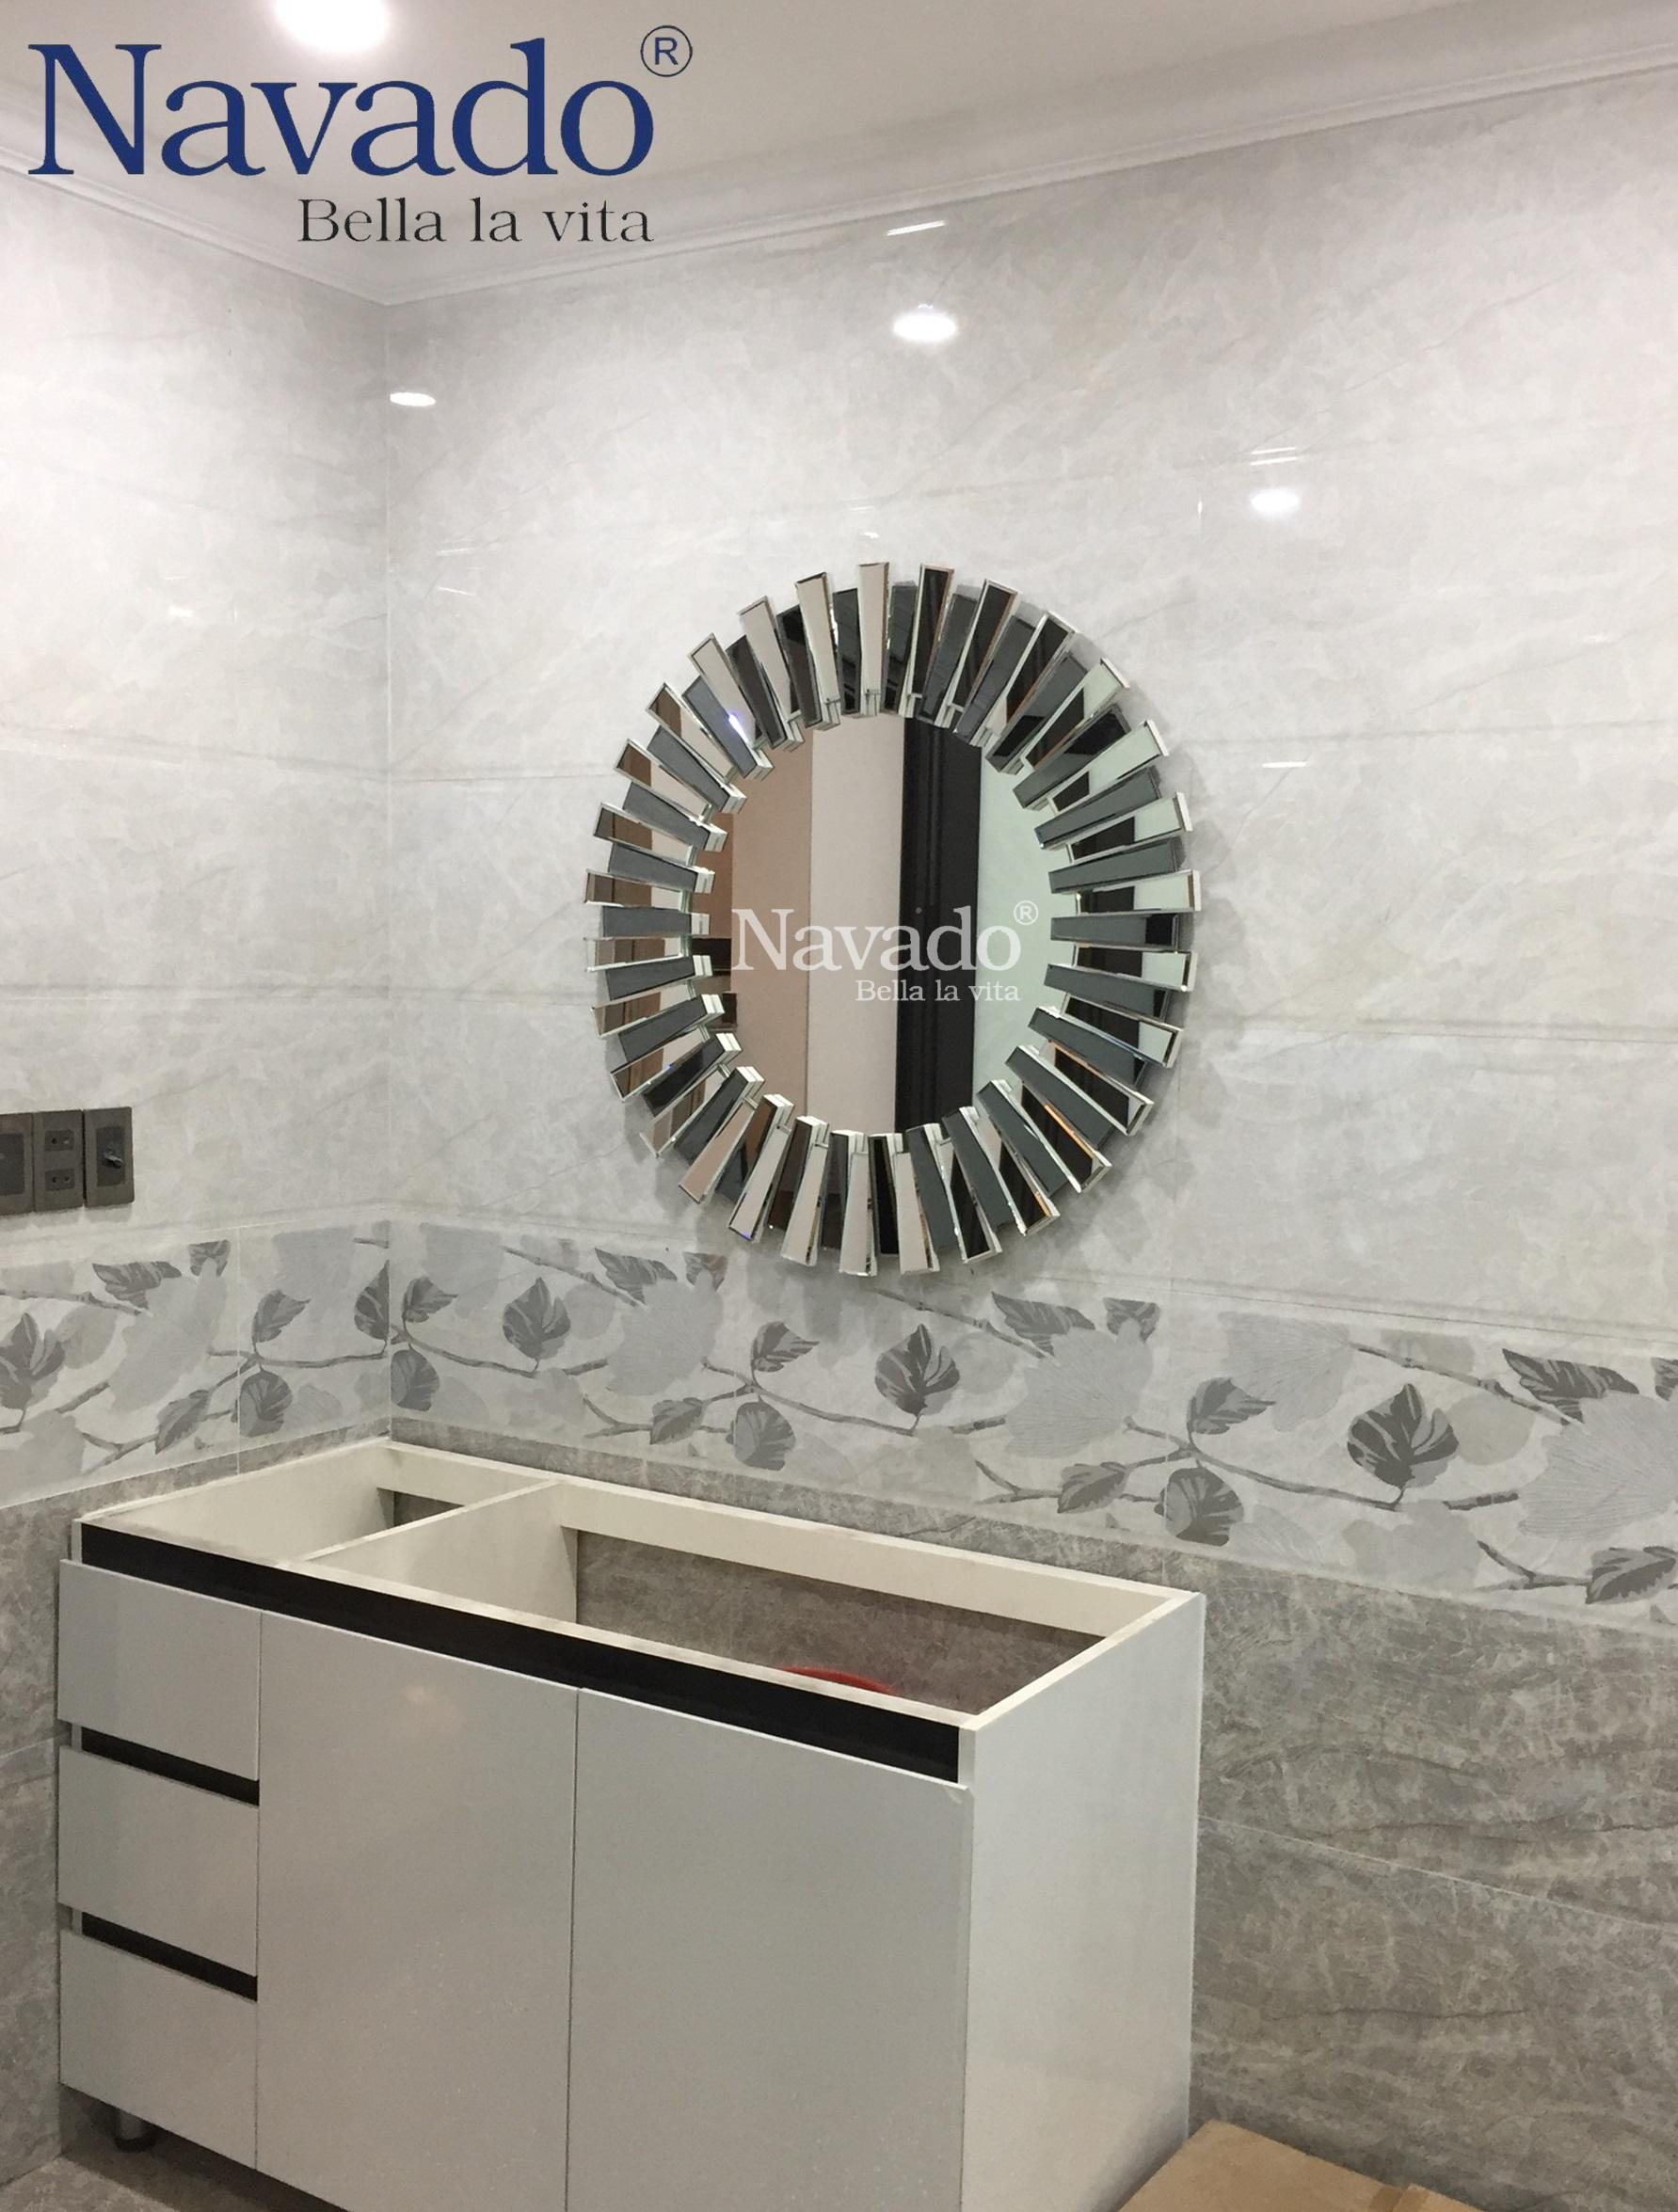 Gương phòng tắm cao cấp treo tường: Sở hữu chiếc gương phòng tắm treo tường cao cấp, bạn sẽ cảm nhận được sự sang trọng và tiện nghi khi sử dụng sản phẩm này. Với chất liệu bền đẹp, thiết kế thẩm mỹ và tính năng tiện ích, chiếc gương này sẽ là điểm nhấn hoàn hảo cho không gian phòng tắm của bạn.